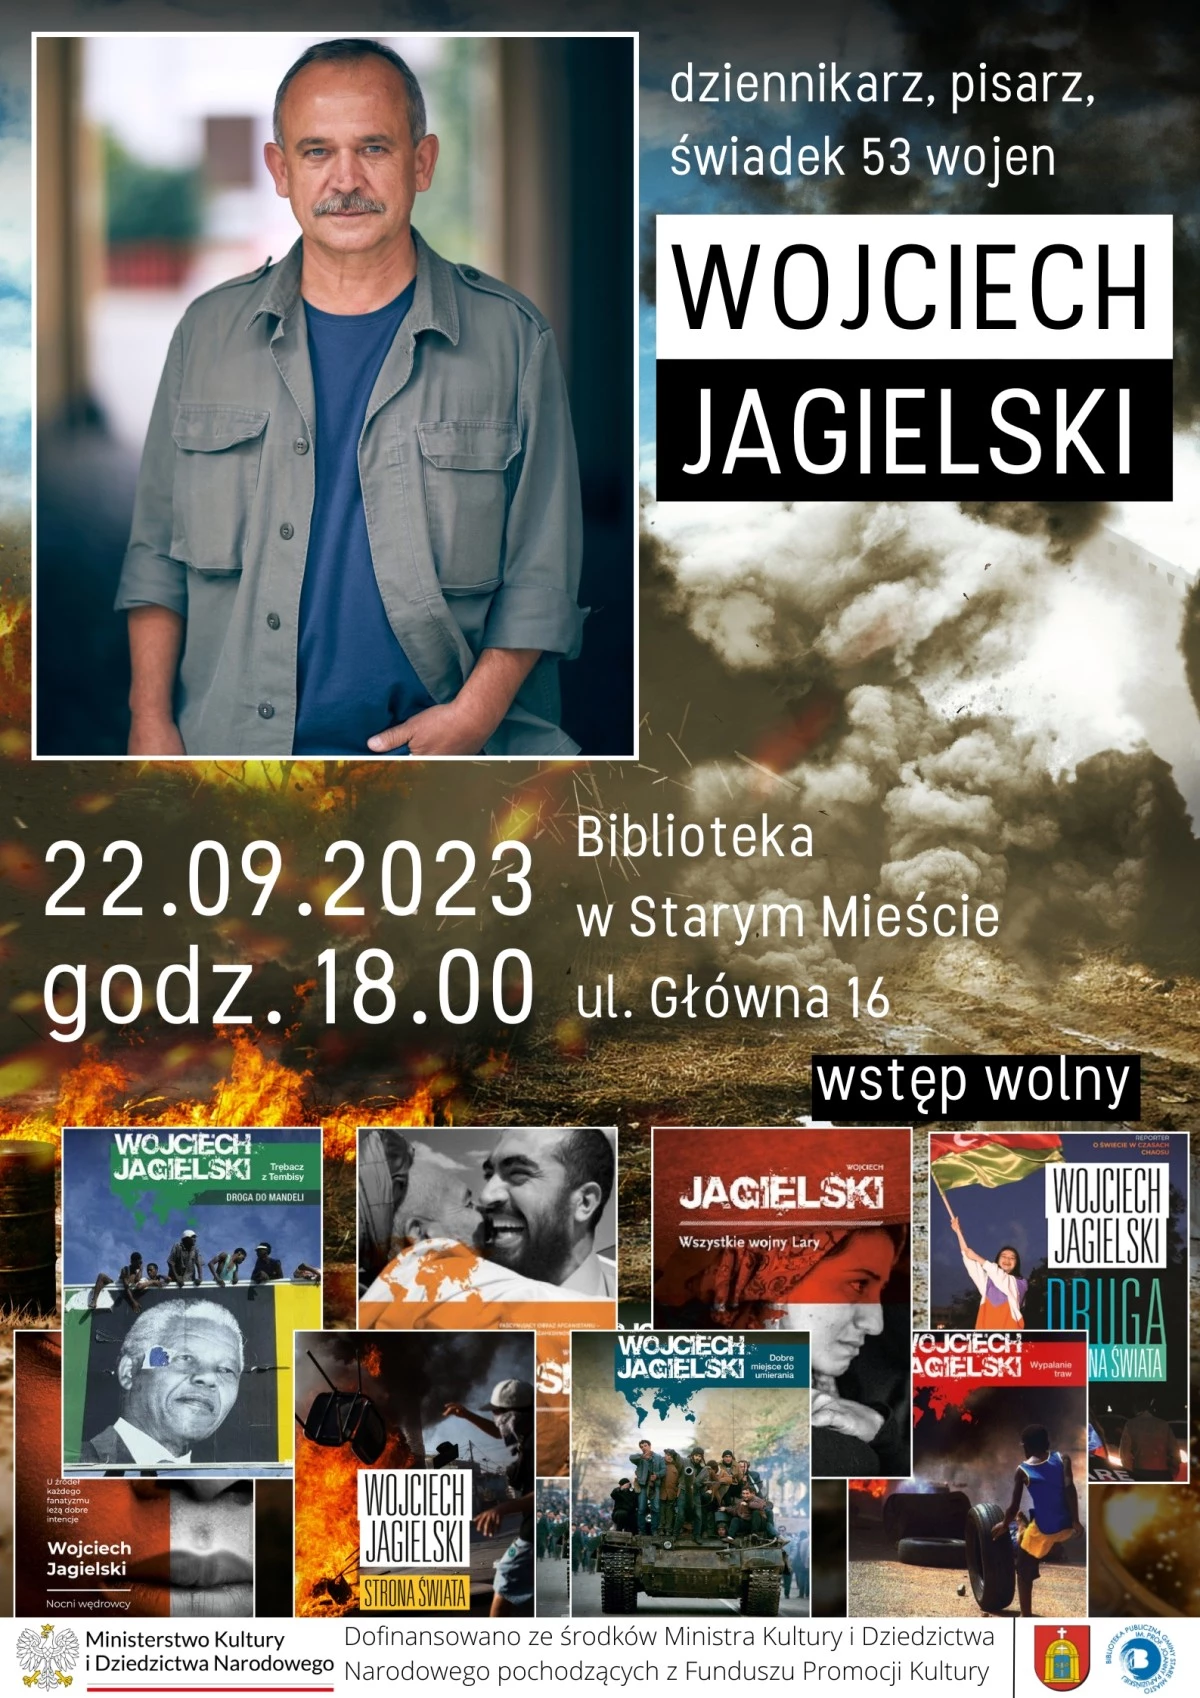 Spotkanie autorskie z Wojciechem Jagielskim